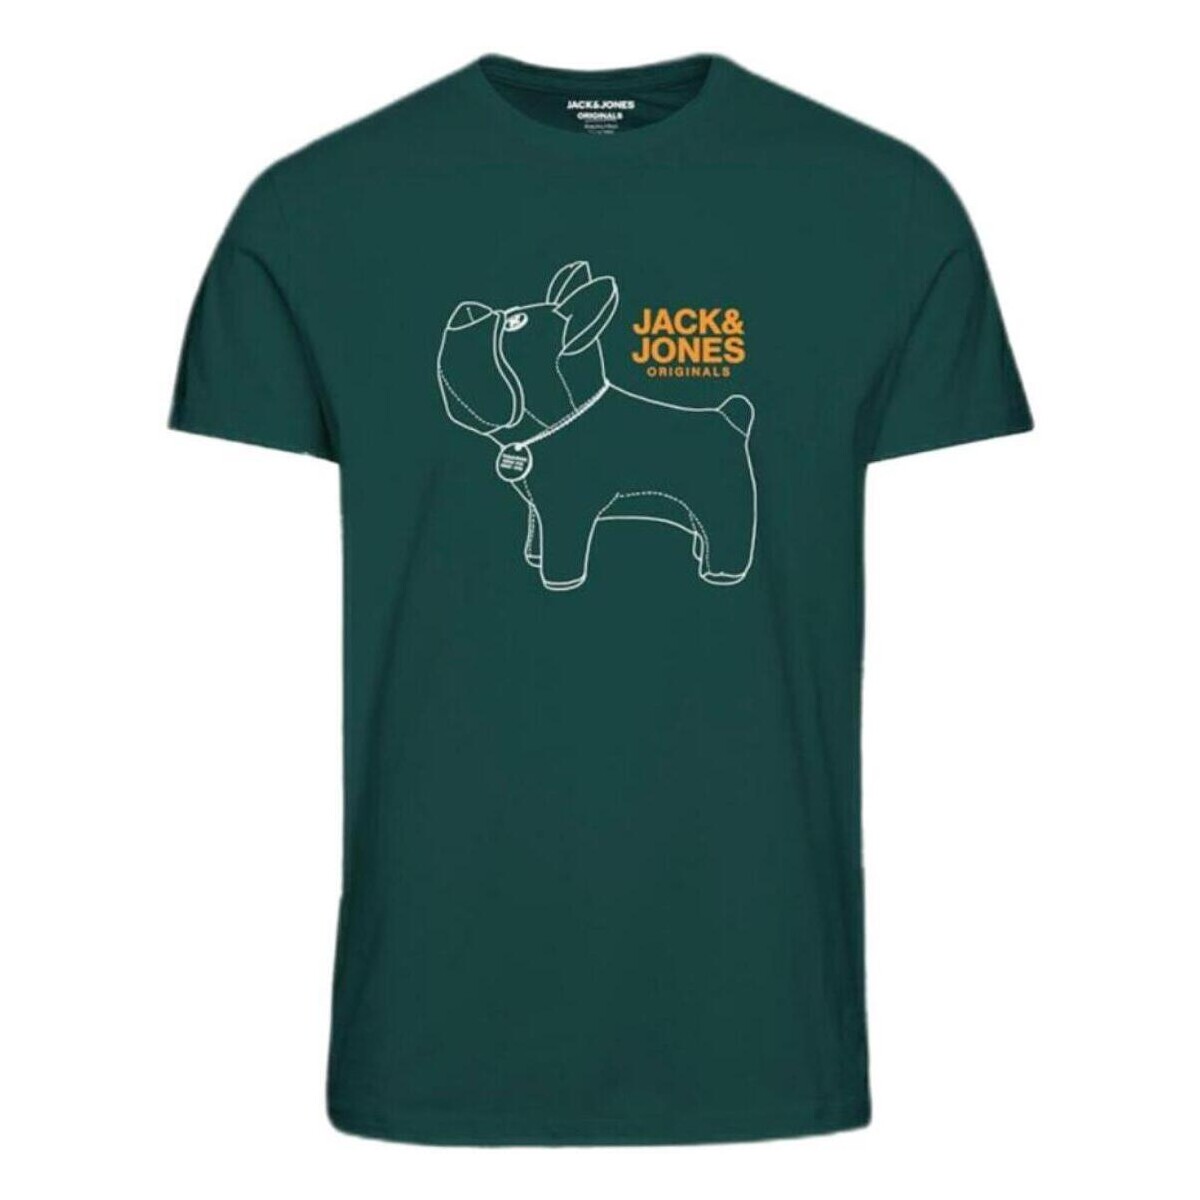 Textiel Jongens T-shirts korte mouwen Jack & Jones  Groen